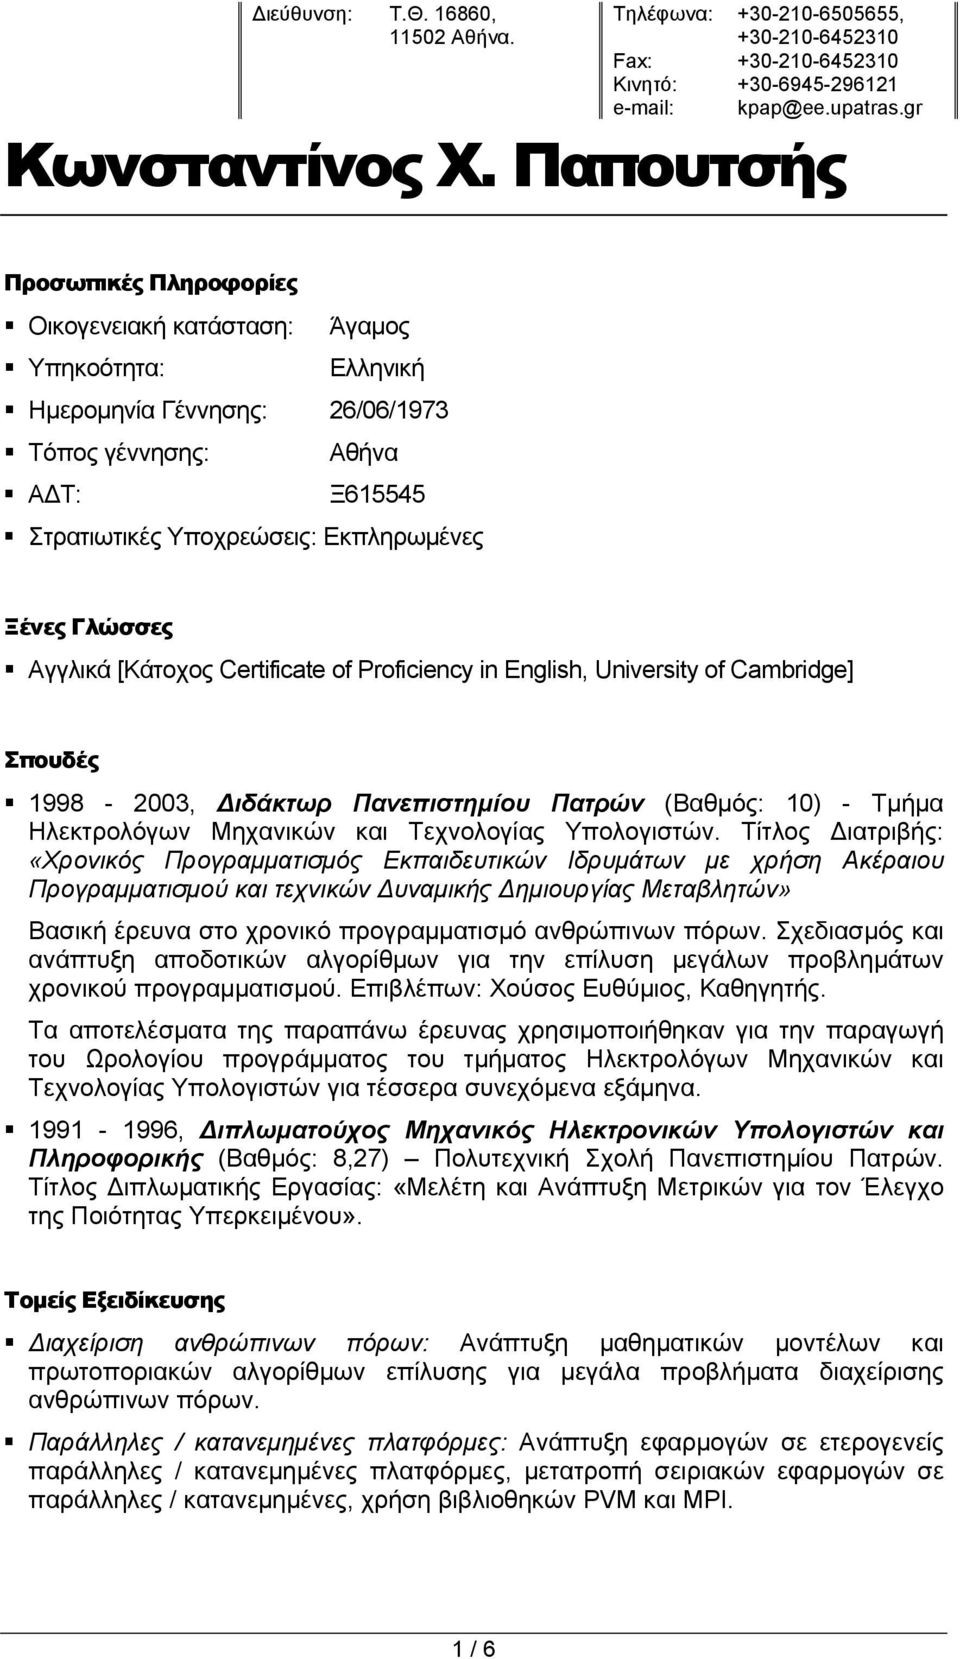 Γλώσσες Αγγλικά [Κάτοχος Certificate of Proficiency in English, University of Cambridge] Σπουδές 1998-2003, Διδάκτωρ Πανεπιστημίου Πατρών (Βαθμός: 10) - Τμήμα Ηλεκτρολόγων Μηχανικών και Τεχνολογίας